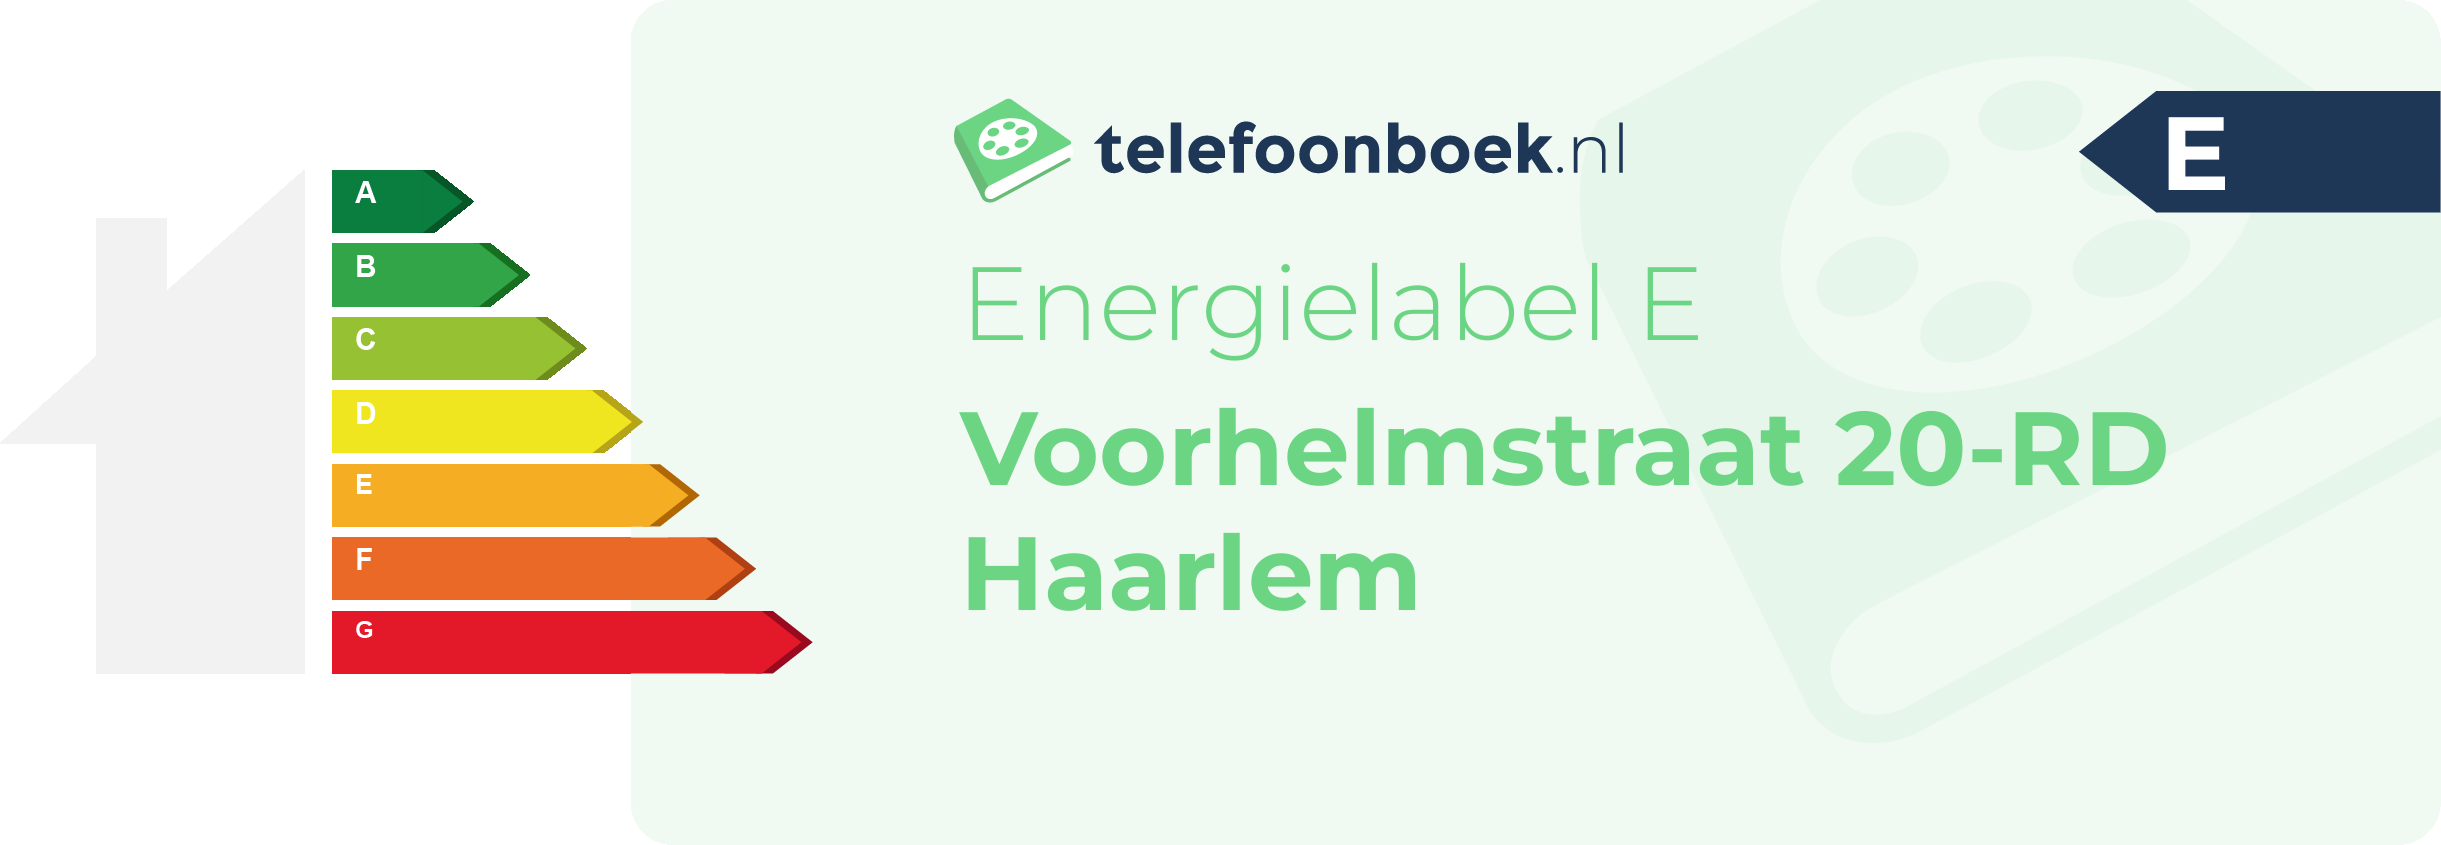 Energielabel Voorhelmstraat 20-RD Haarlem